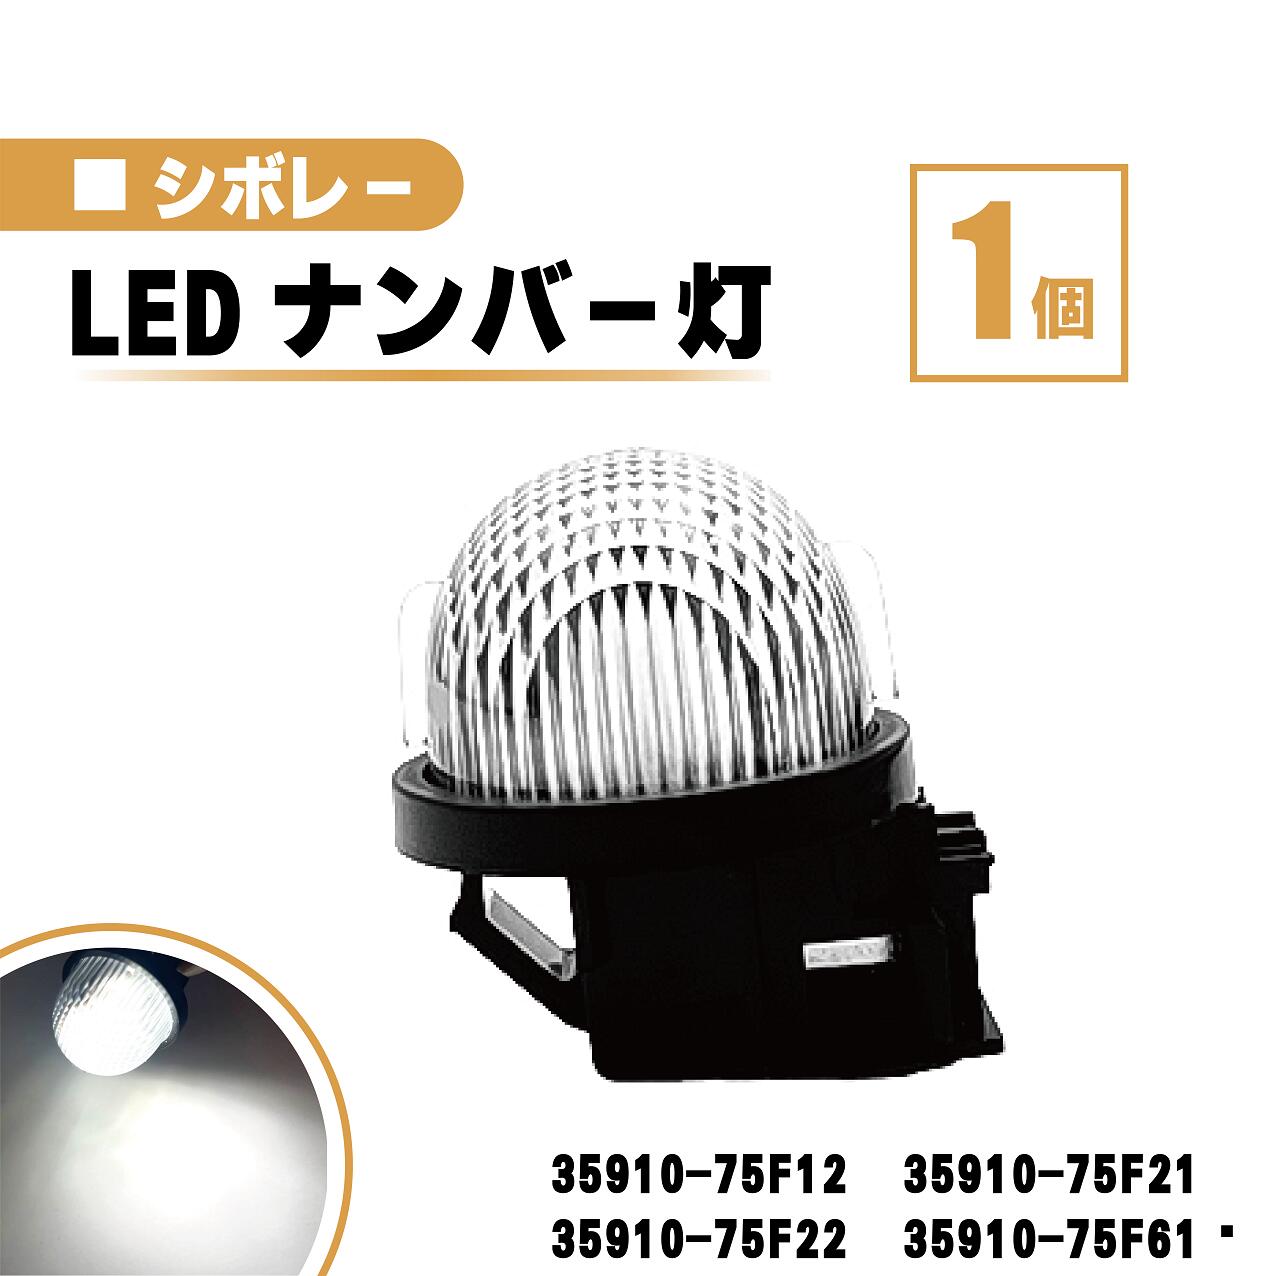 スズキ シボレー MW LED ナンバー 灯 1個 レンズ 一体型 リア ライセンスプレート ランプ ライト 白 ホワイト 高輝度 ME34 送料無料 35910-75F12 35910-75F21 35910-75F22 35910-75F61